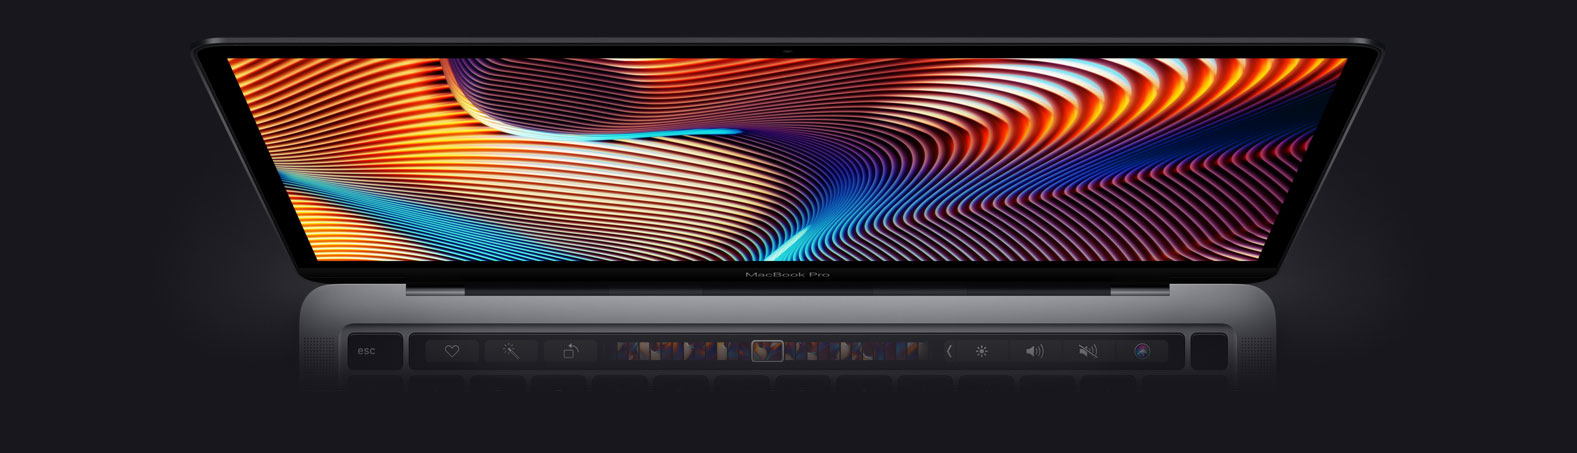 Графический процессор MacBook Pro 13 2020